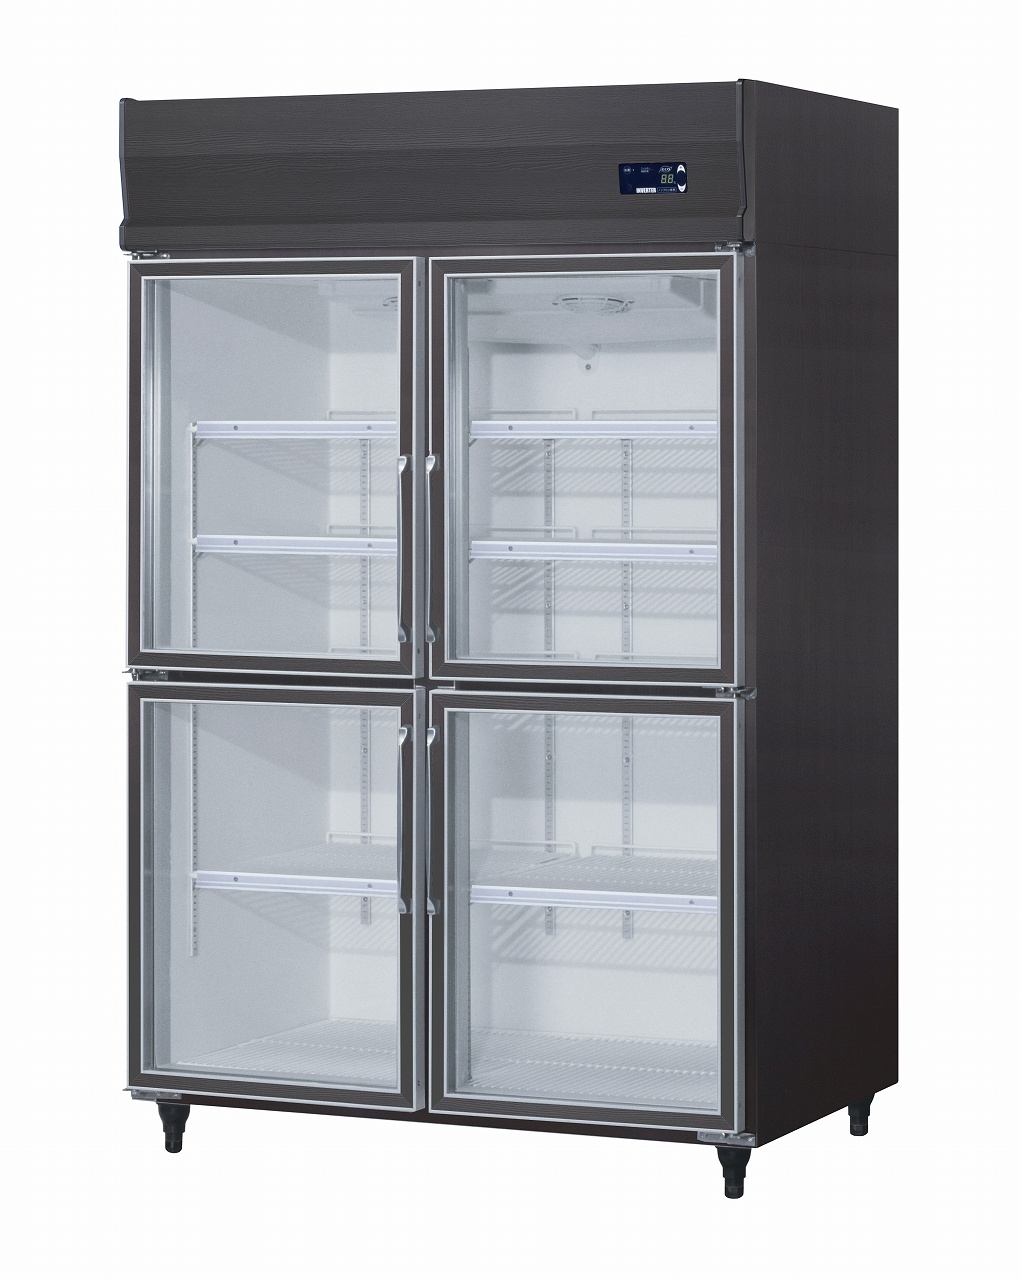 上置型]インバータ制御冷蔵ショーケース エコ蔵くん | 店舗用冷凍 